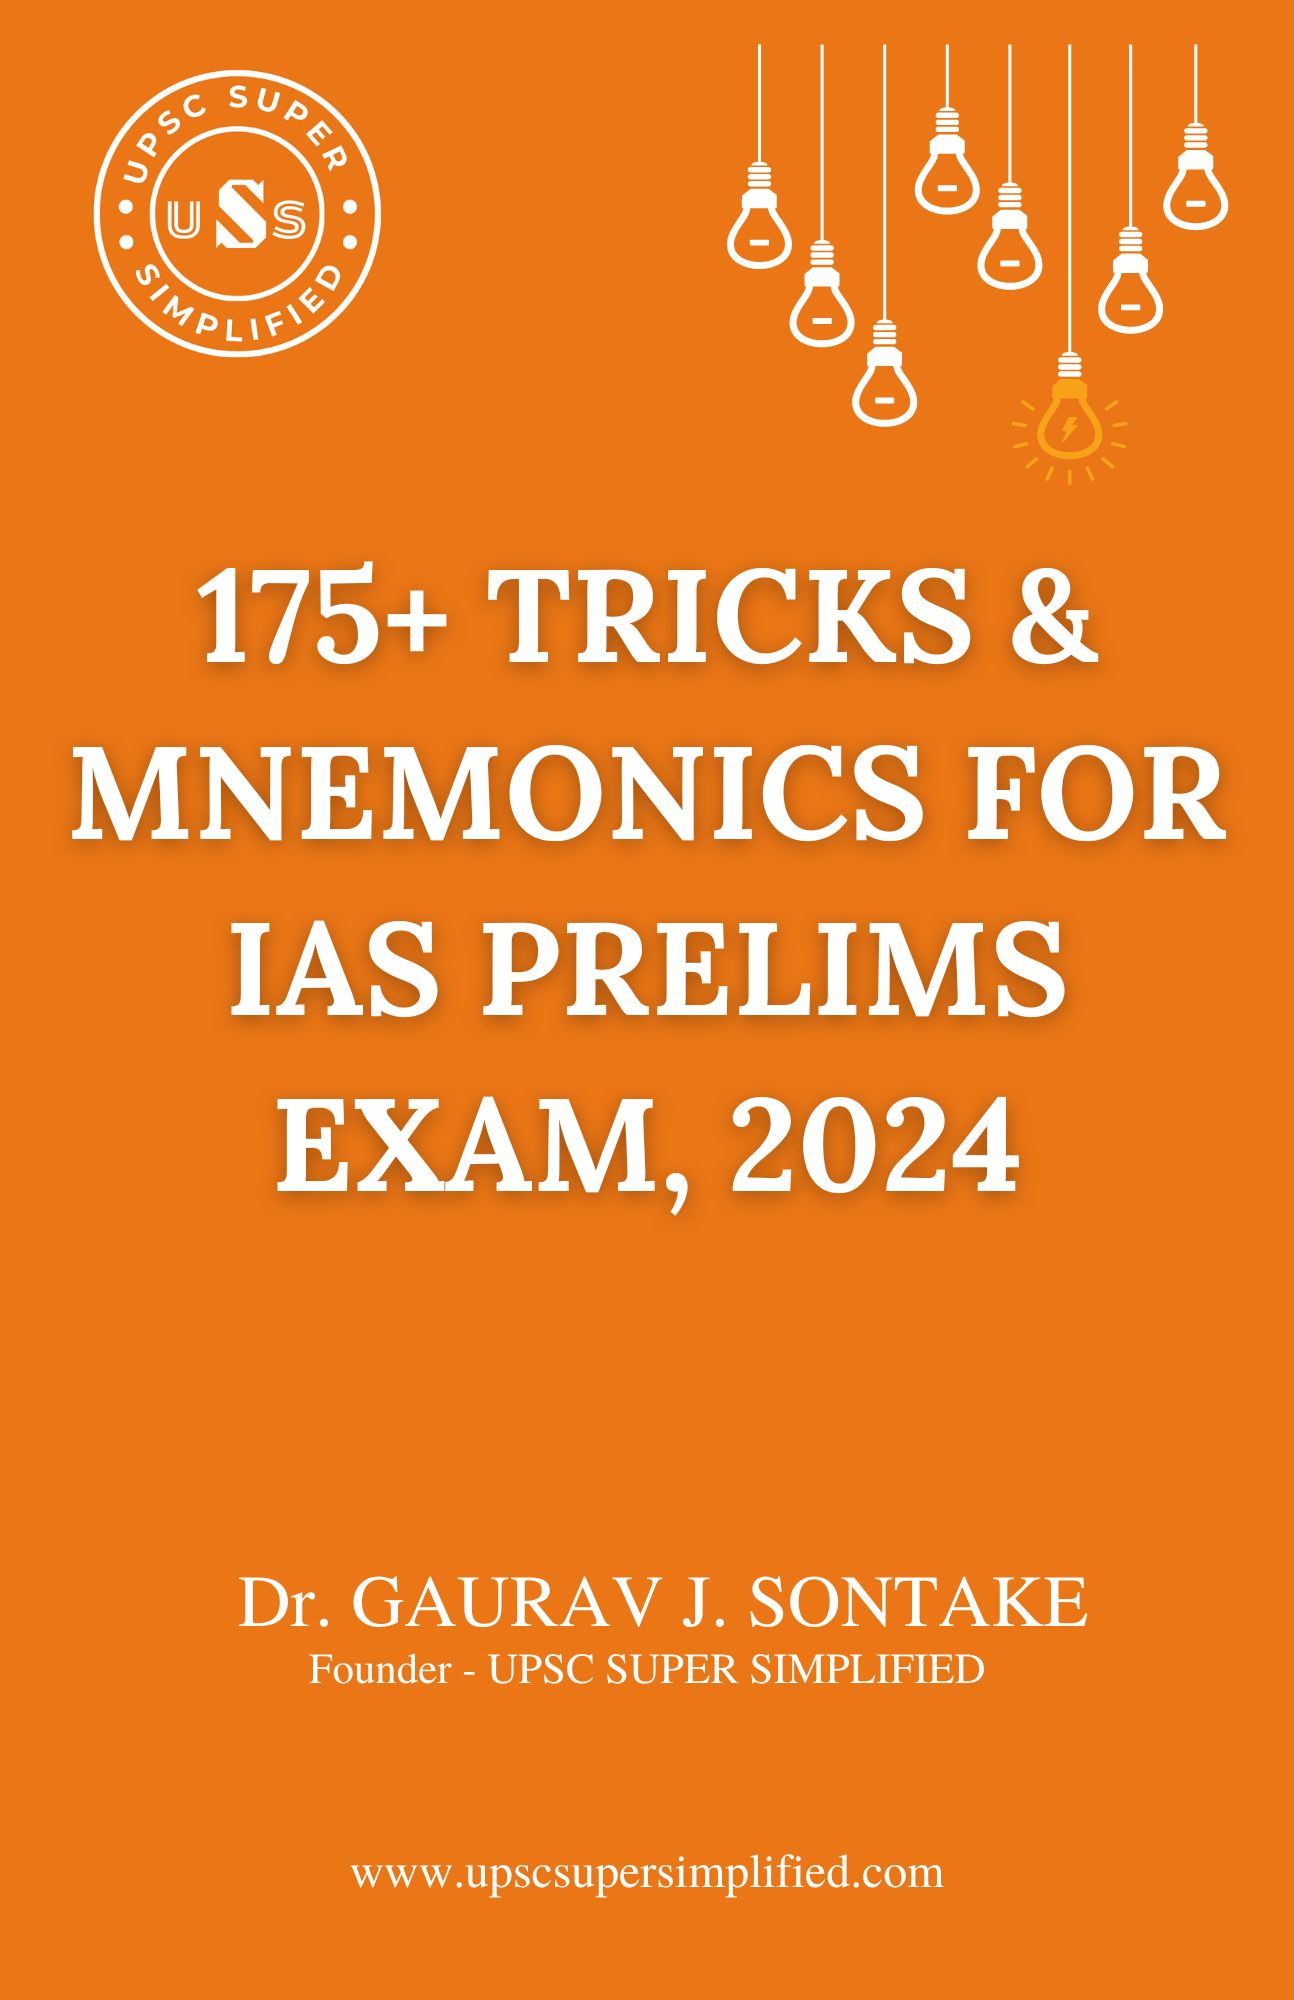 175+ Tricks & Mnemonics for IAS Prelims Exam, 2024